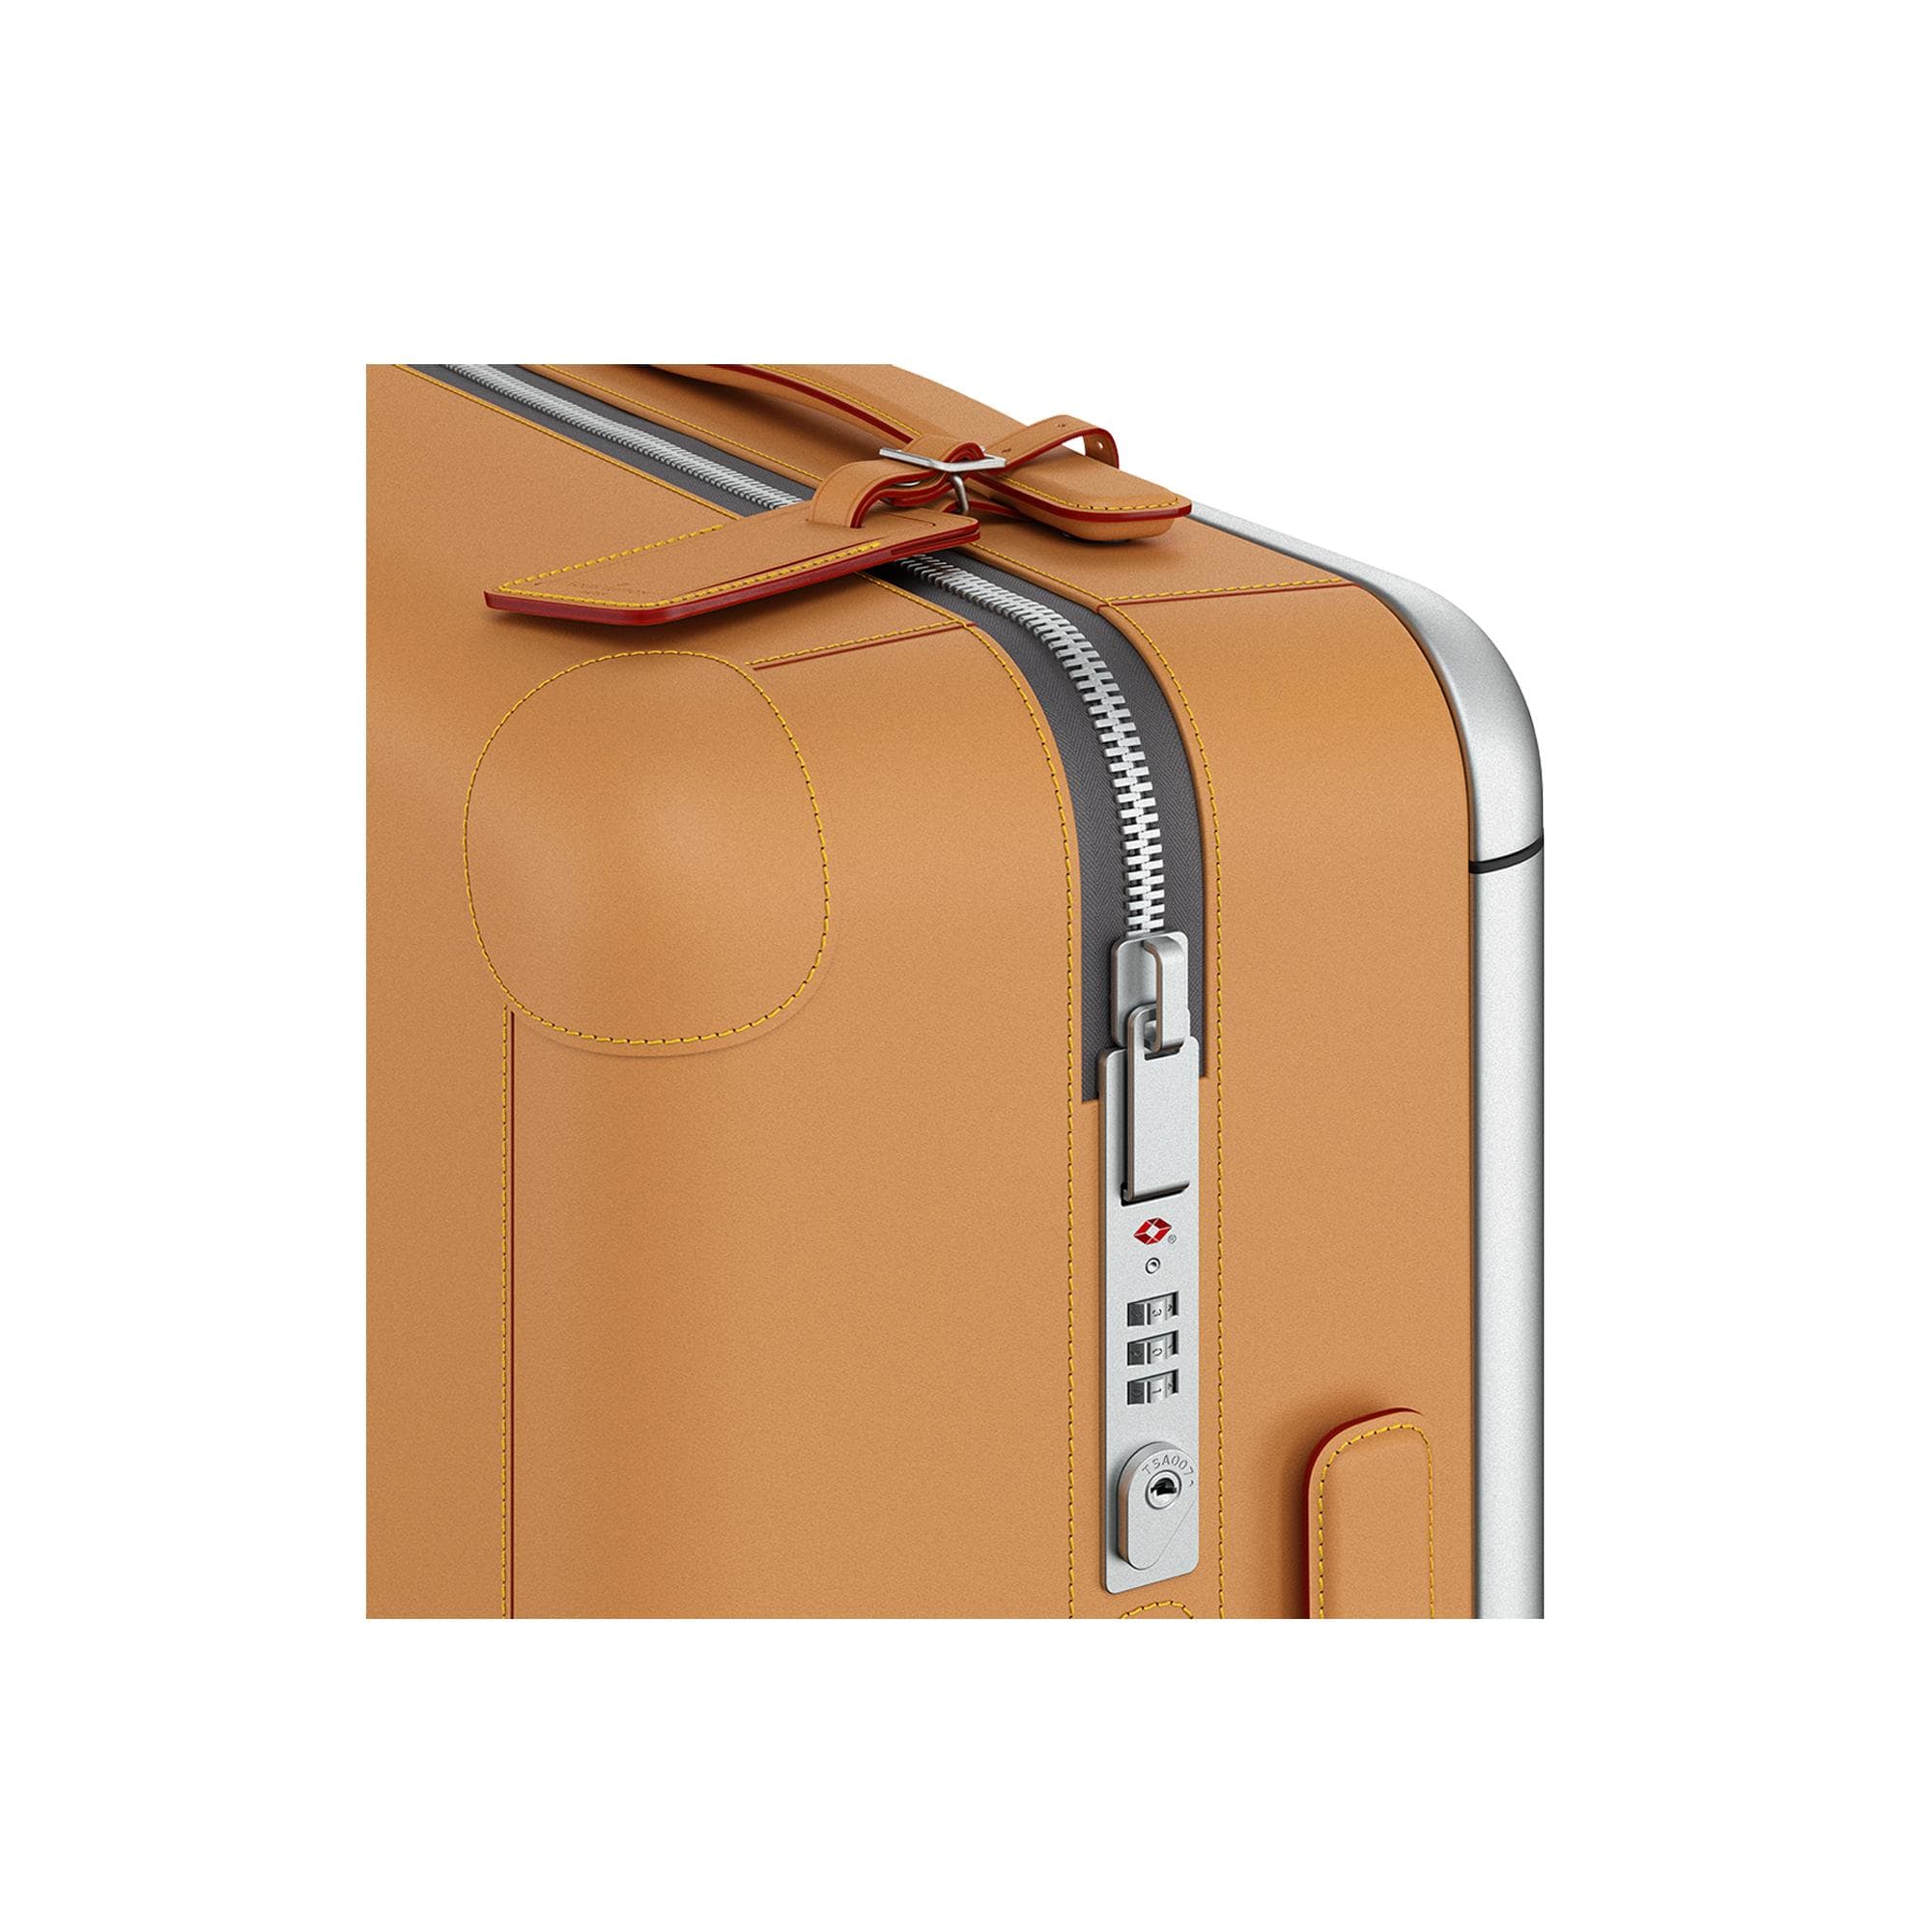 Horizon 55 Suitcase - Luxury Epi Leather Orange